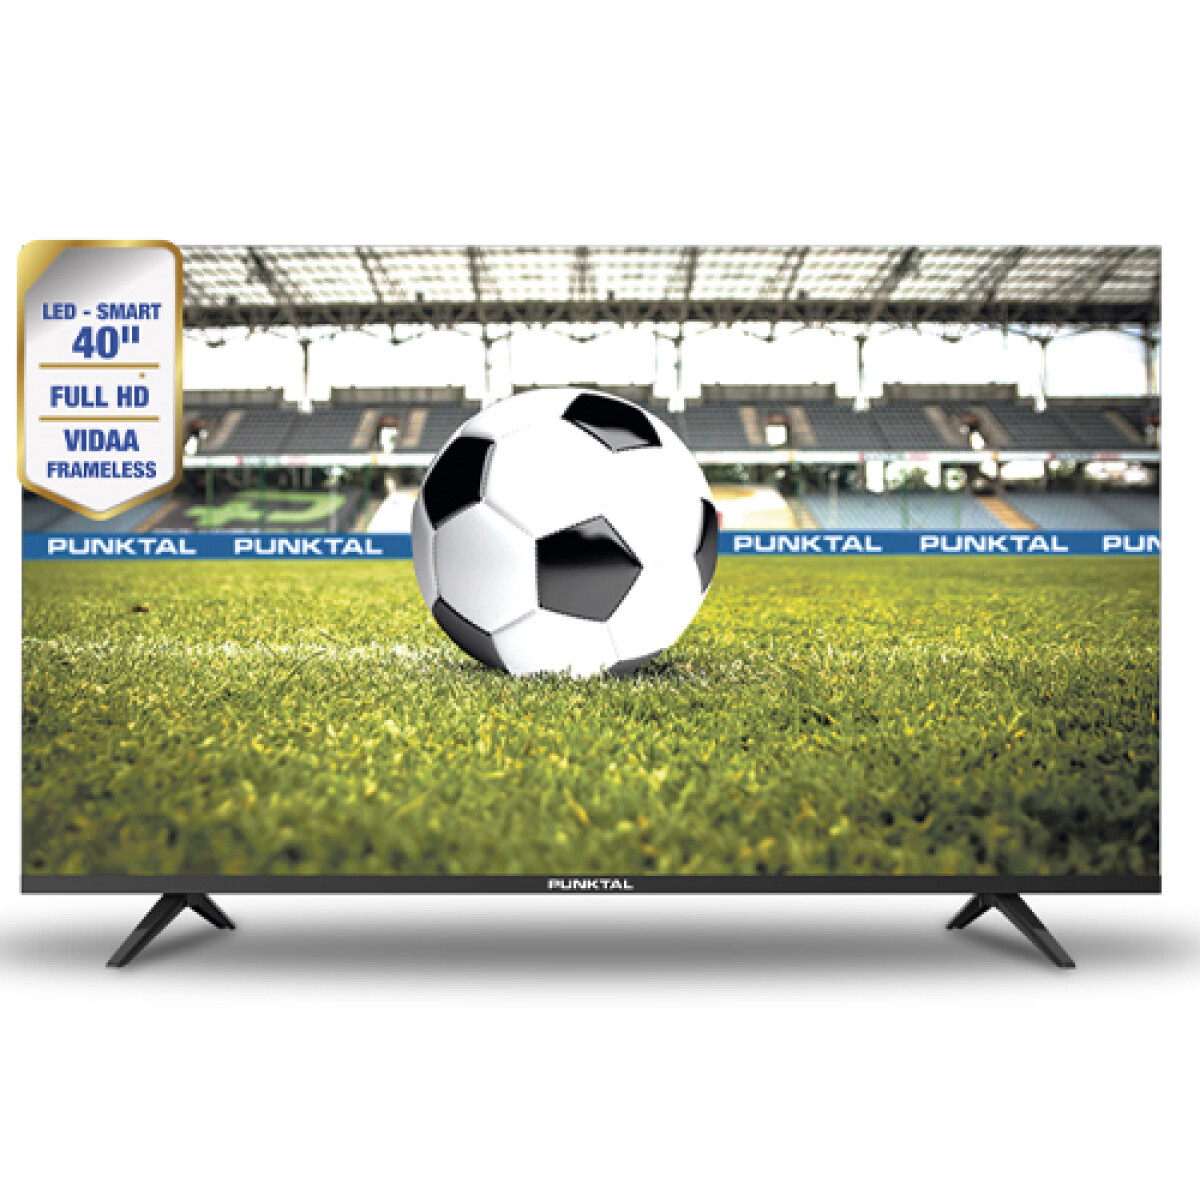 Televisor led smart tv 40" Punktal frameless full HD - PK-40 JJV 